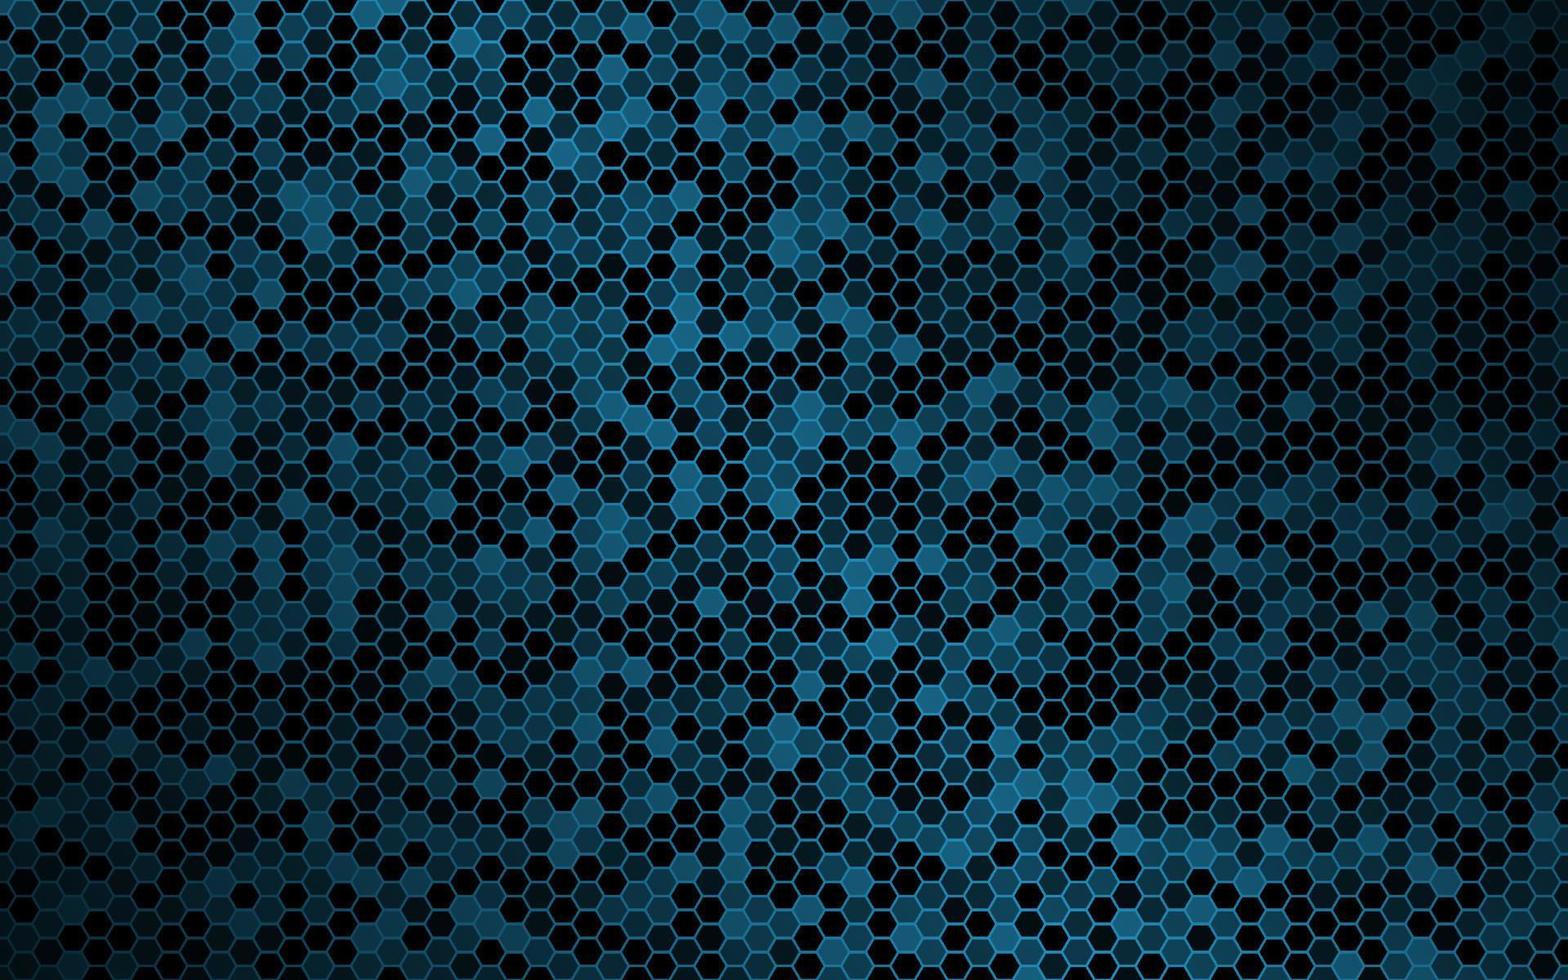 sfondo vettoriale blu scuro con maglia esagonale. moderna struttura geometrica. semplice illustrazione di design